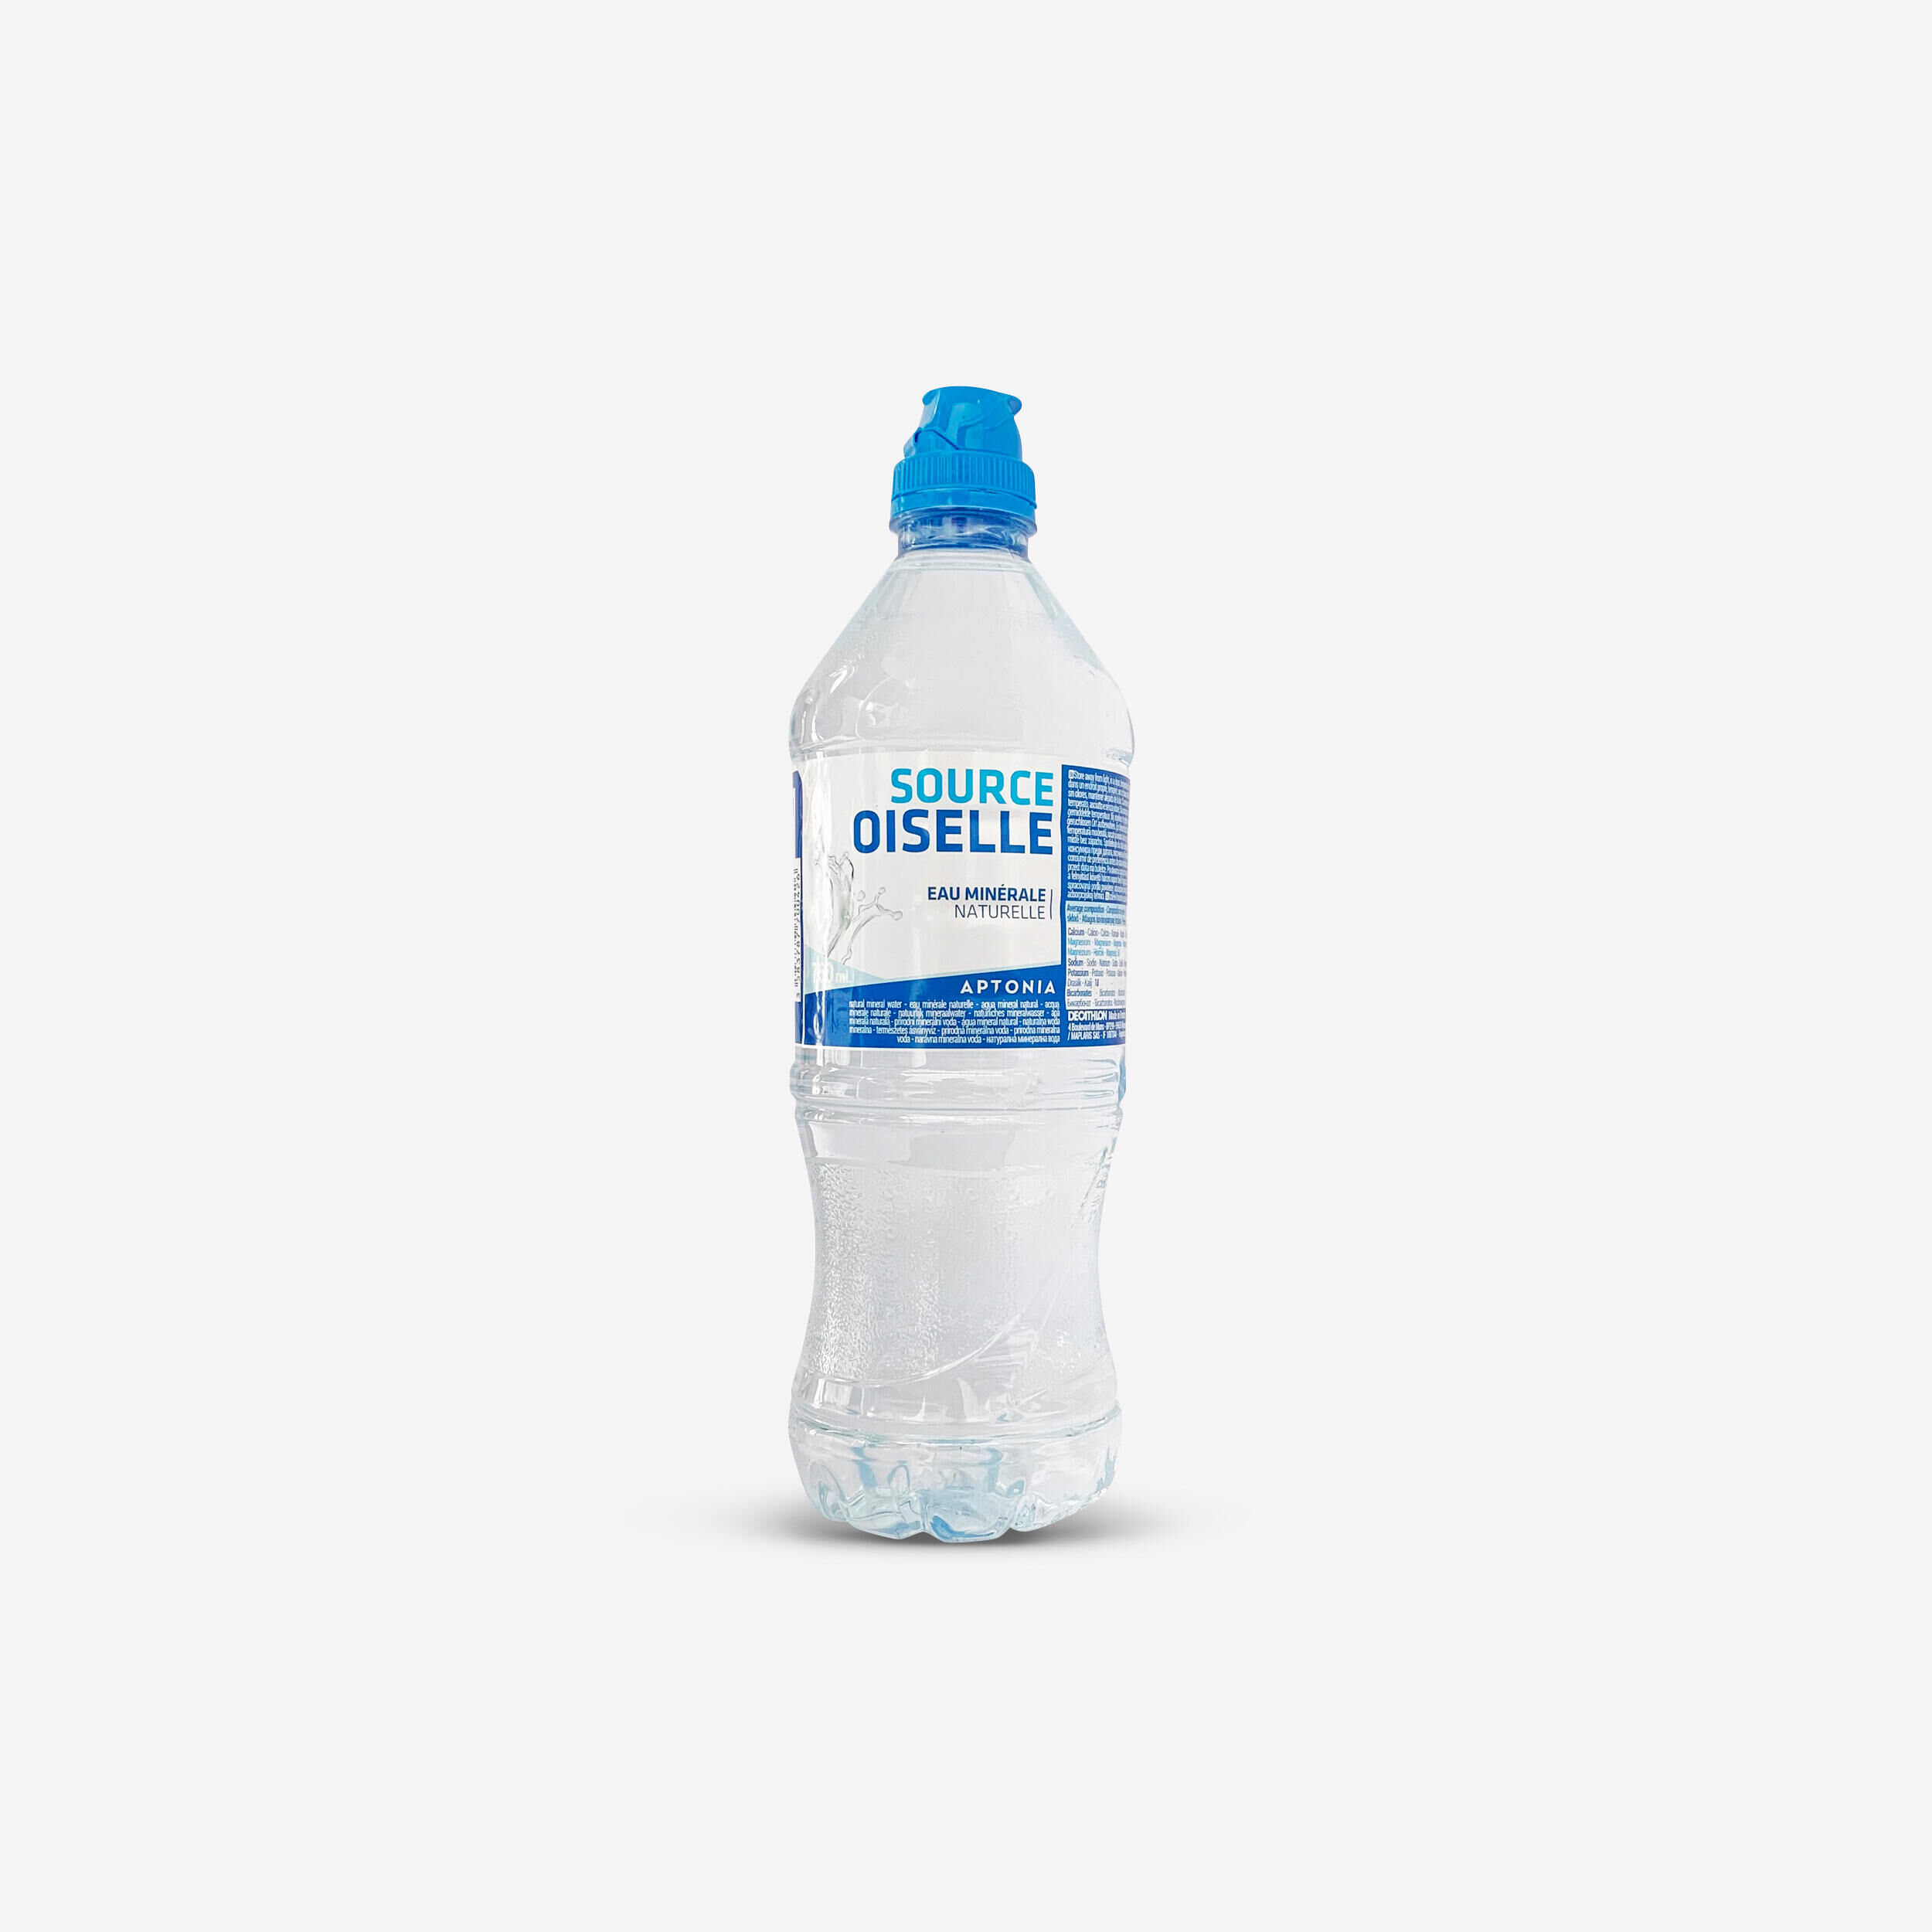 DECATHLON 750ml OISELLE Water bottle